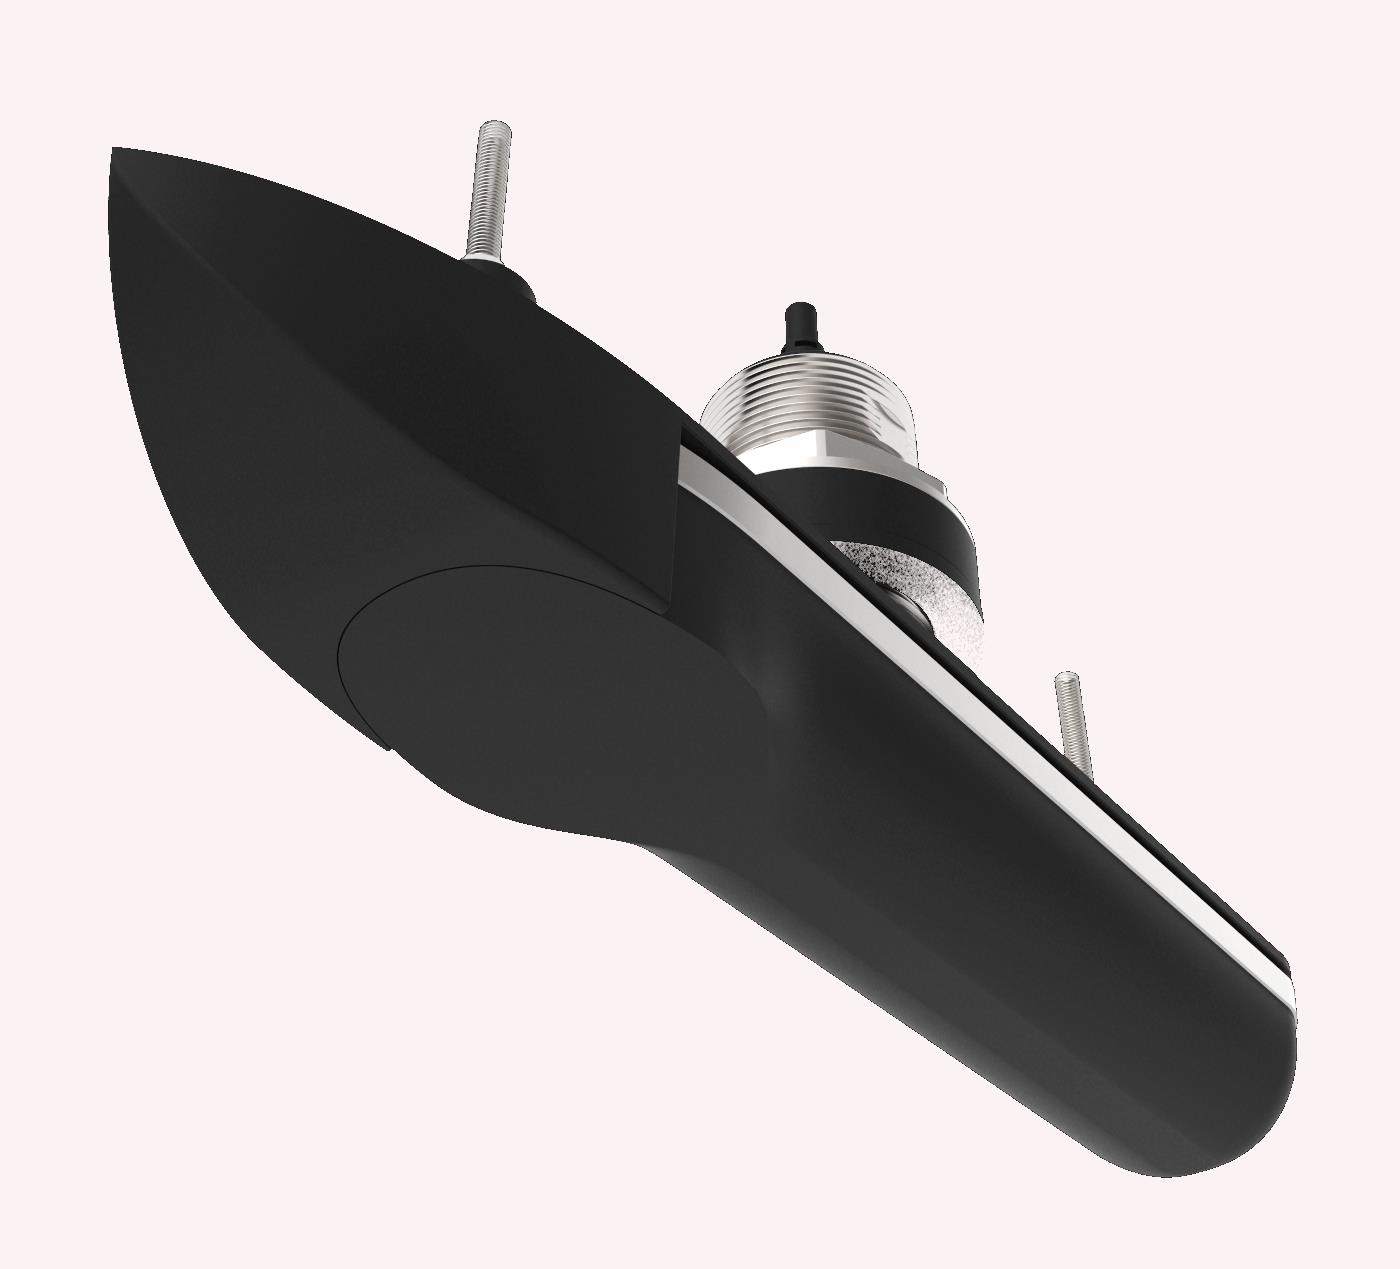 Raymarine RVM-420 RealVision 3D-Edelstahl-Durchbruchgeber, Backbord Steuerbord 20°